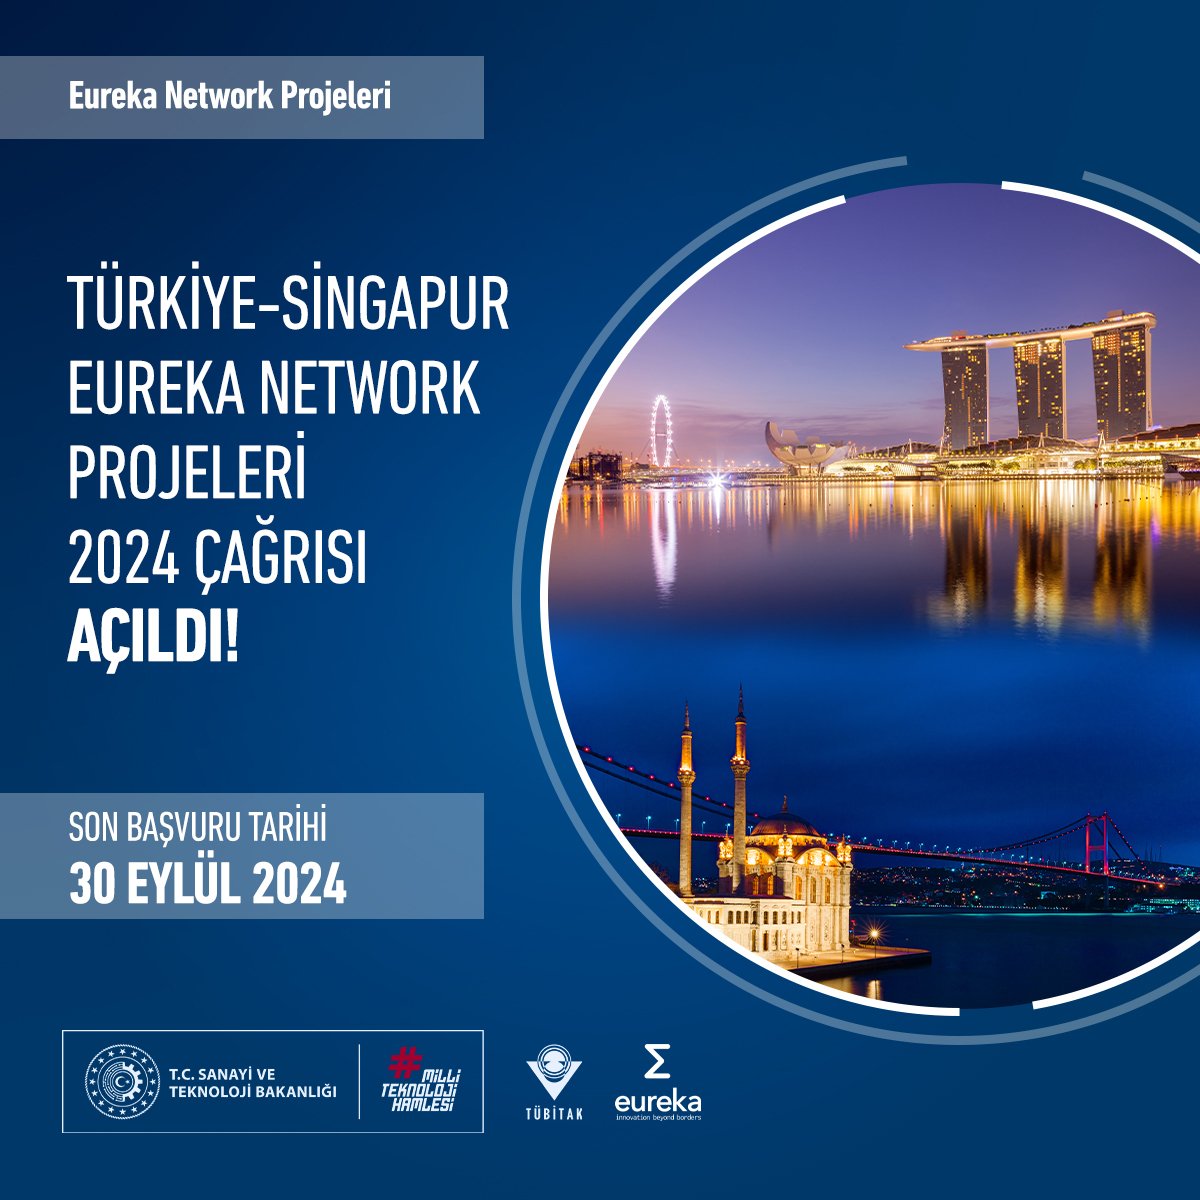 📢 Türkiye-Singapur Eureka Network Projeleri 2024 Çağrısı açıldı! Çağrı kapsamında; ⚙️ Tüm teknoloji ve pazar alanlarında yenilikçi ürün, süreç veya hizmet geliştirilmesine odaklanan, 💼 Güçlü pazar potansiyeline sahip ve aynı zamanda pazar için çözümler üretmeyi hedefleyen,…